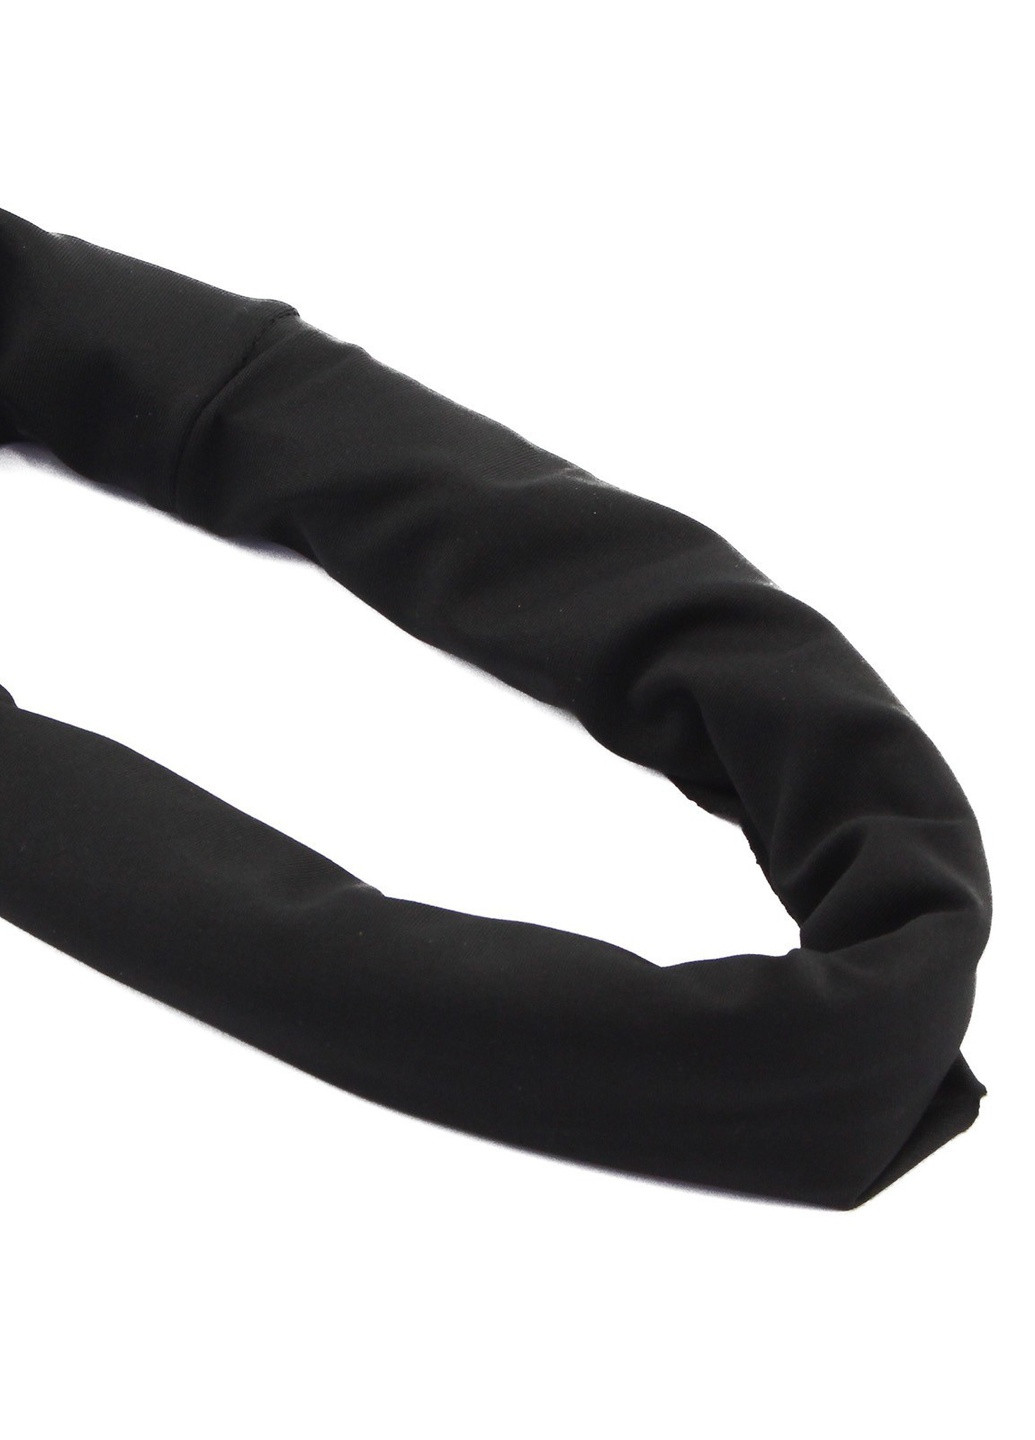 MFH шарф-балаклава трикотажный черный (10173a) черный спортивный производство - Германия